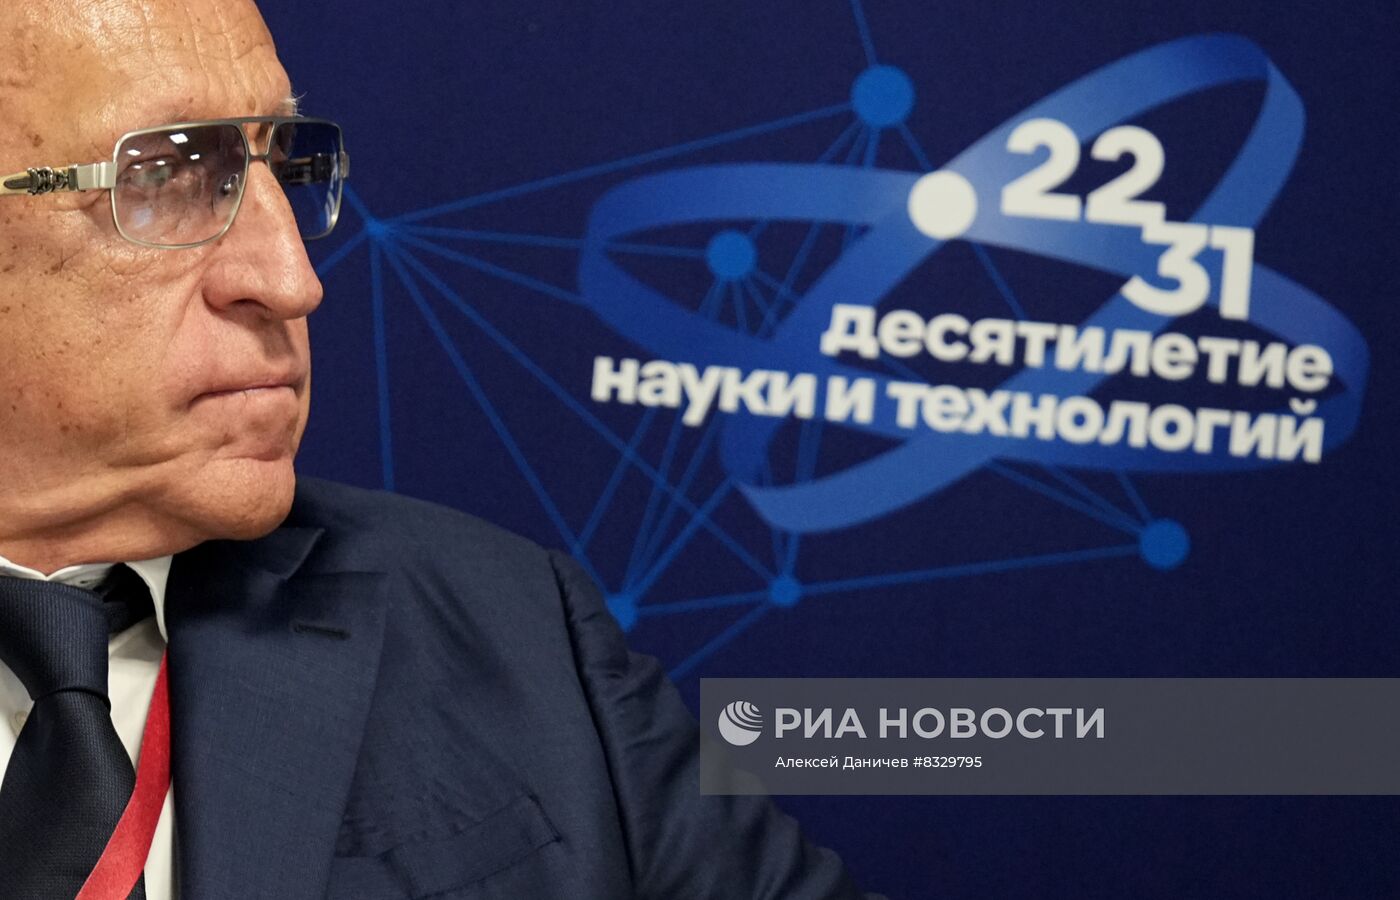 II КМУ-2022. Программа развития научного приборостроения в России